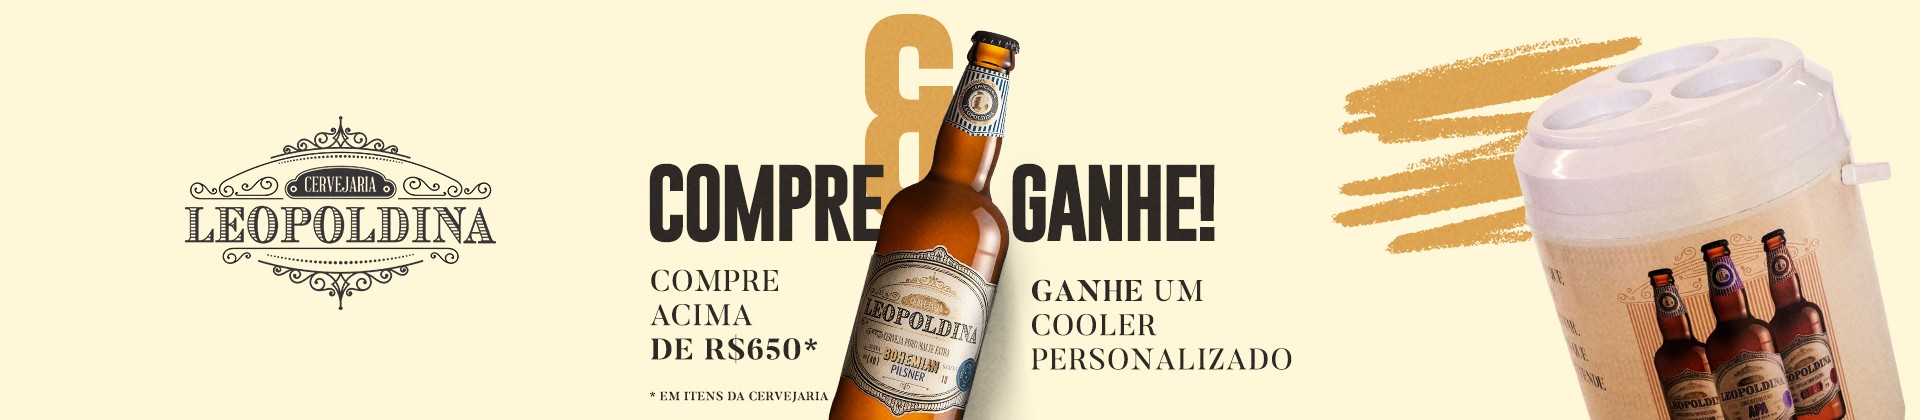 Compre e ganhe cooler | Cervejaria Leopoldina (1920x420)